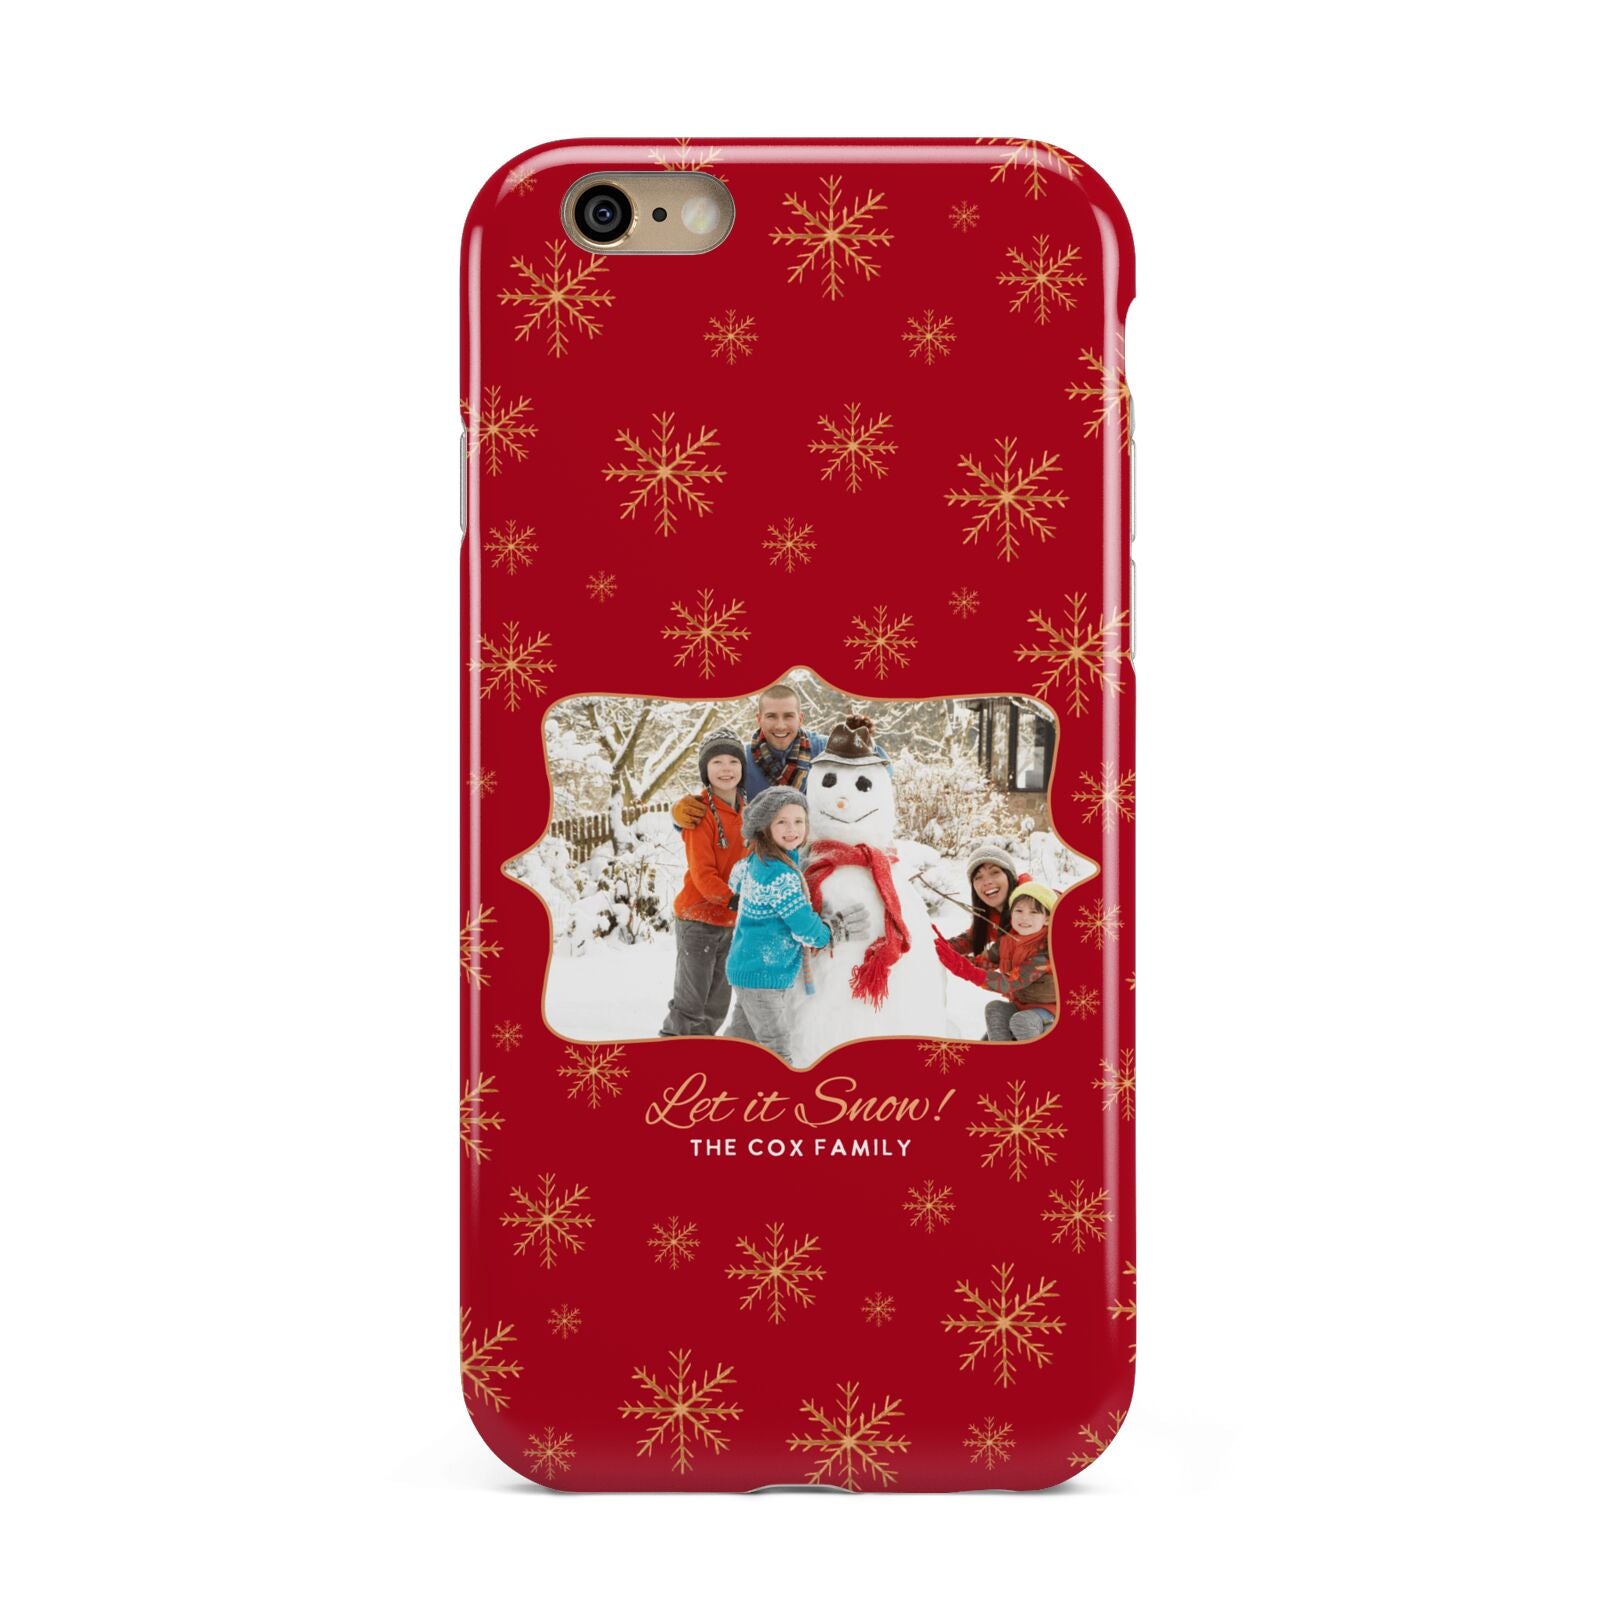 Let it Snow Christmas Photo Upload Apple iPhone 6 3D Tough Case